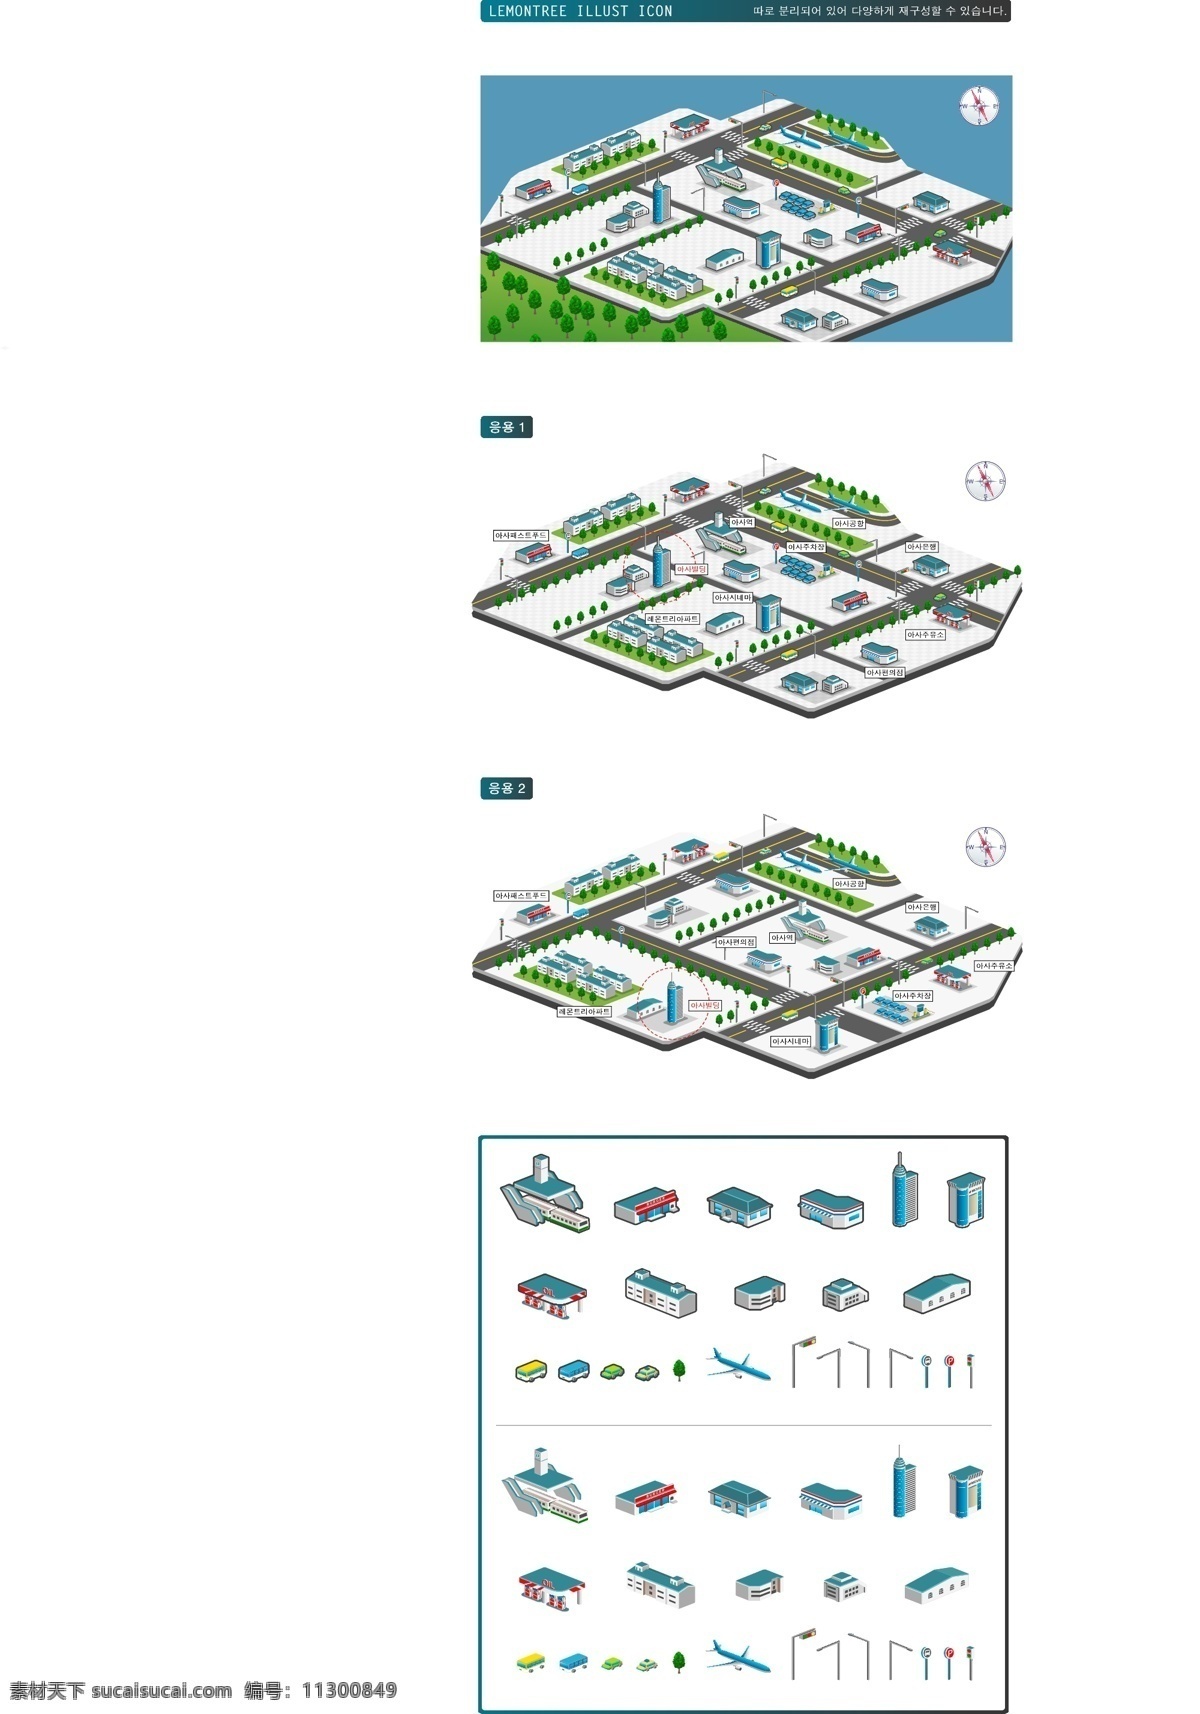 城市 规划图 绘制 元素 矢量 厂房 车 方向标 楼房 路 路灯 绿地 鸟瞰图 小区 指南针 树 建设规划 anmin 矢量图 其他矢量图